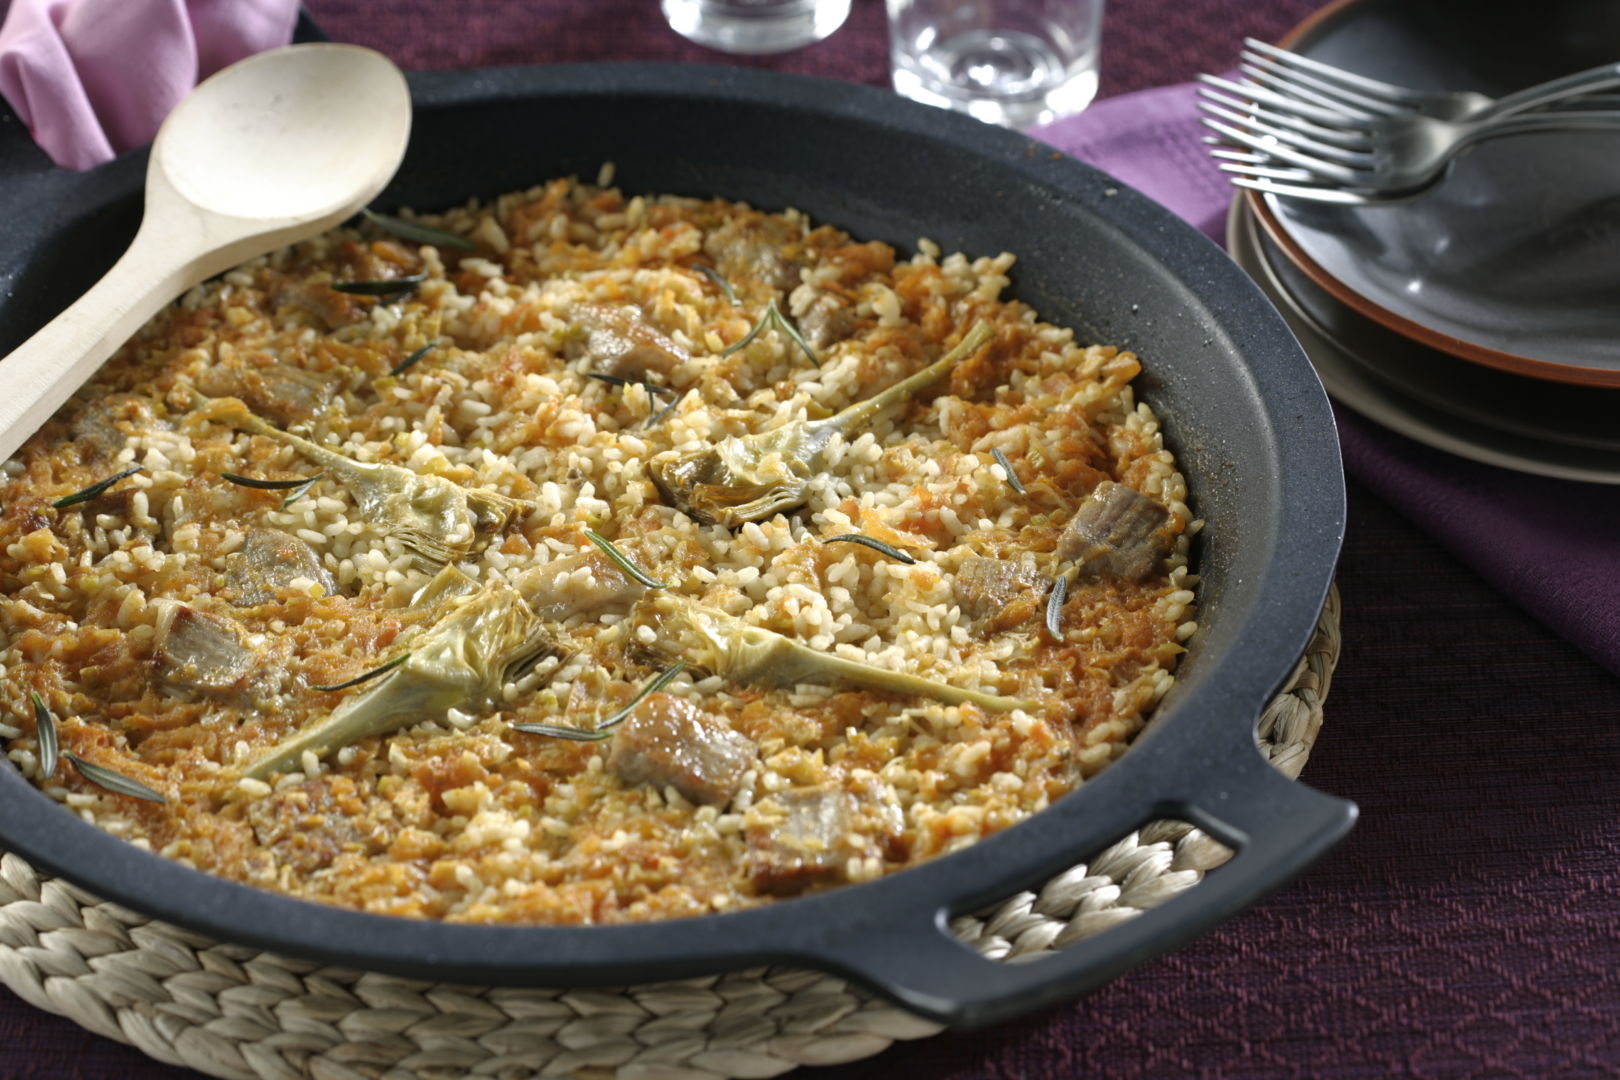 Plato de arroz con presa y alcachofa